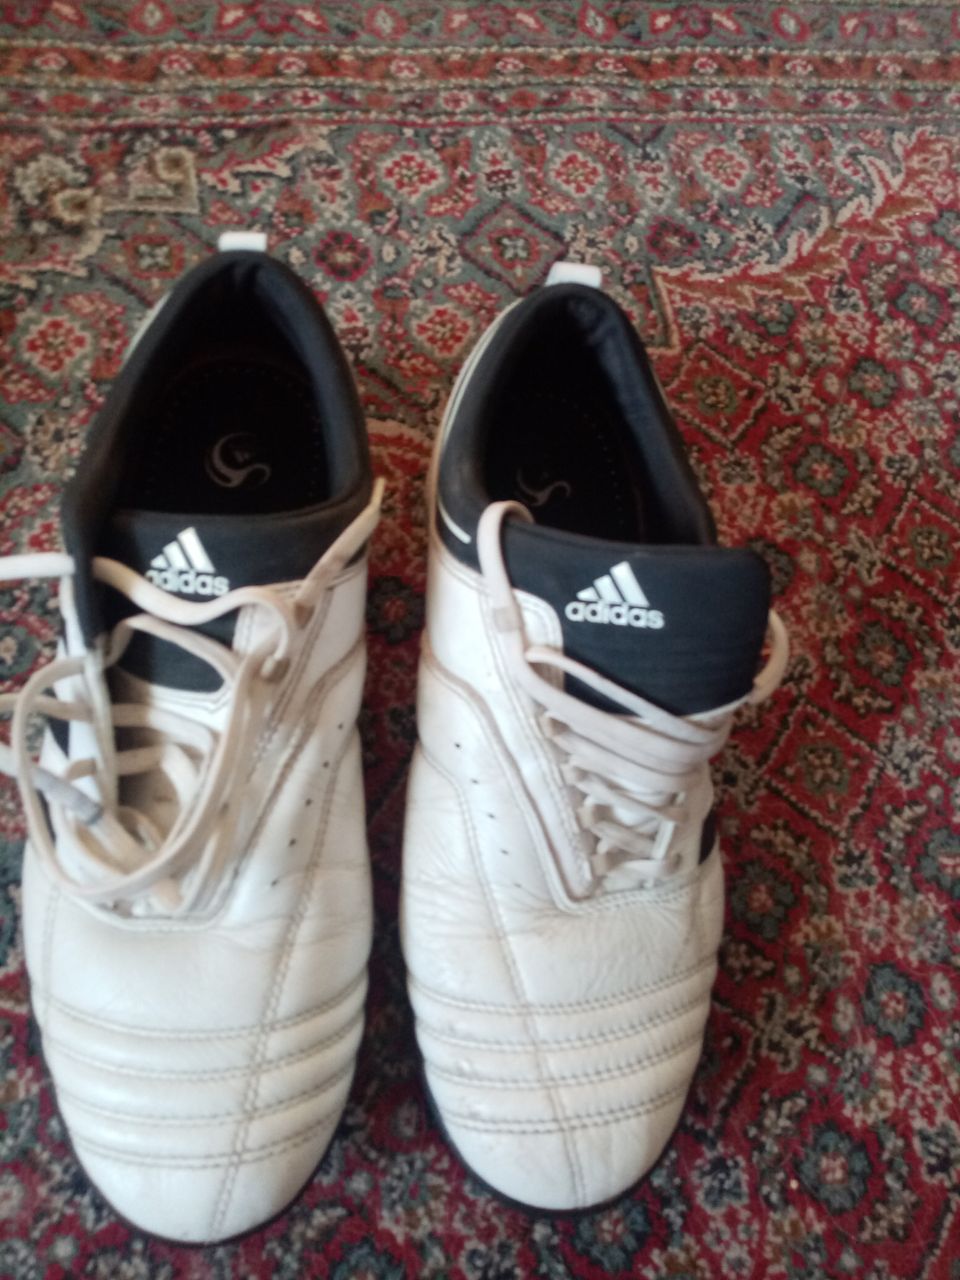 Jalkapallo kengät, Adidas, adi Nova